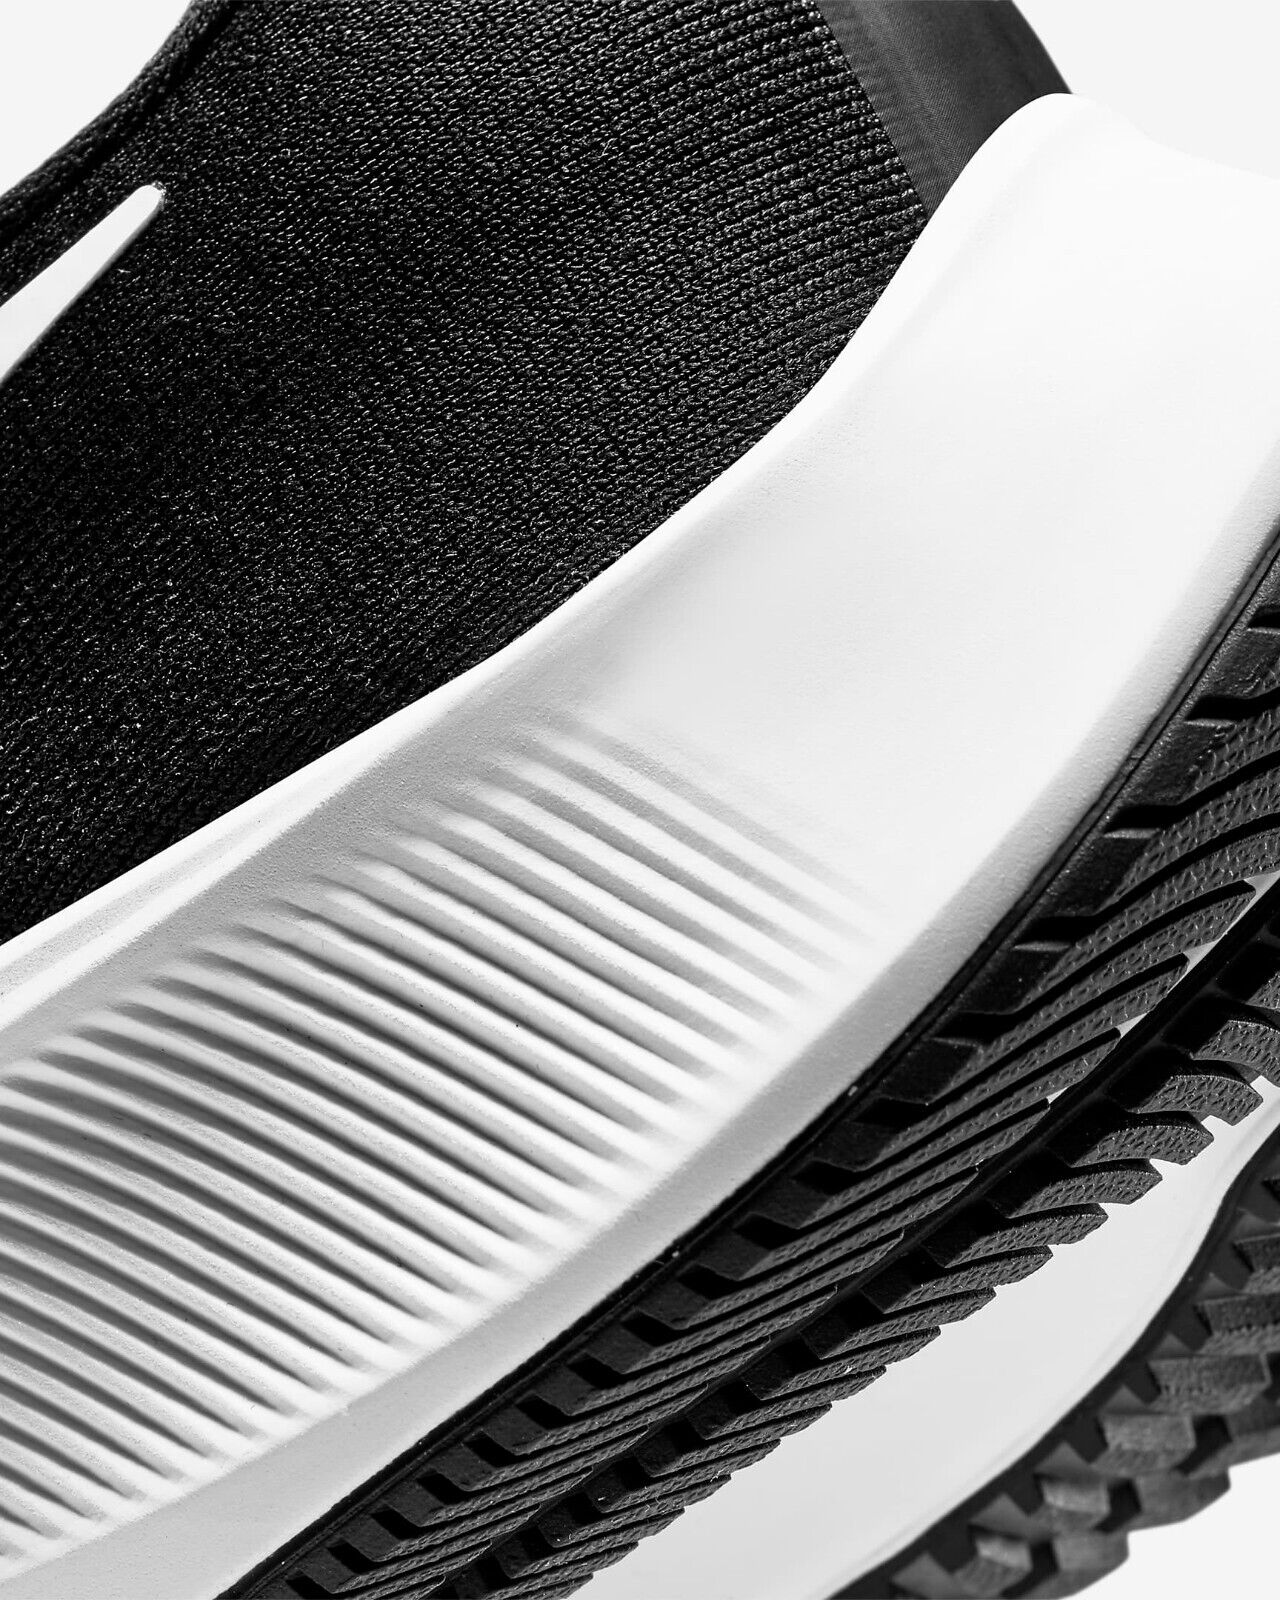 Men's Nike Air Zoom Pegasus 37 Running Shoes, BQ9646 002 Multi Sizes Black/White